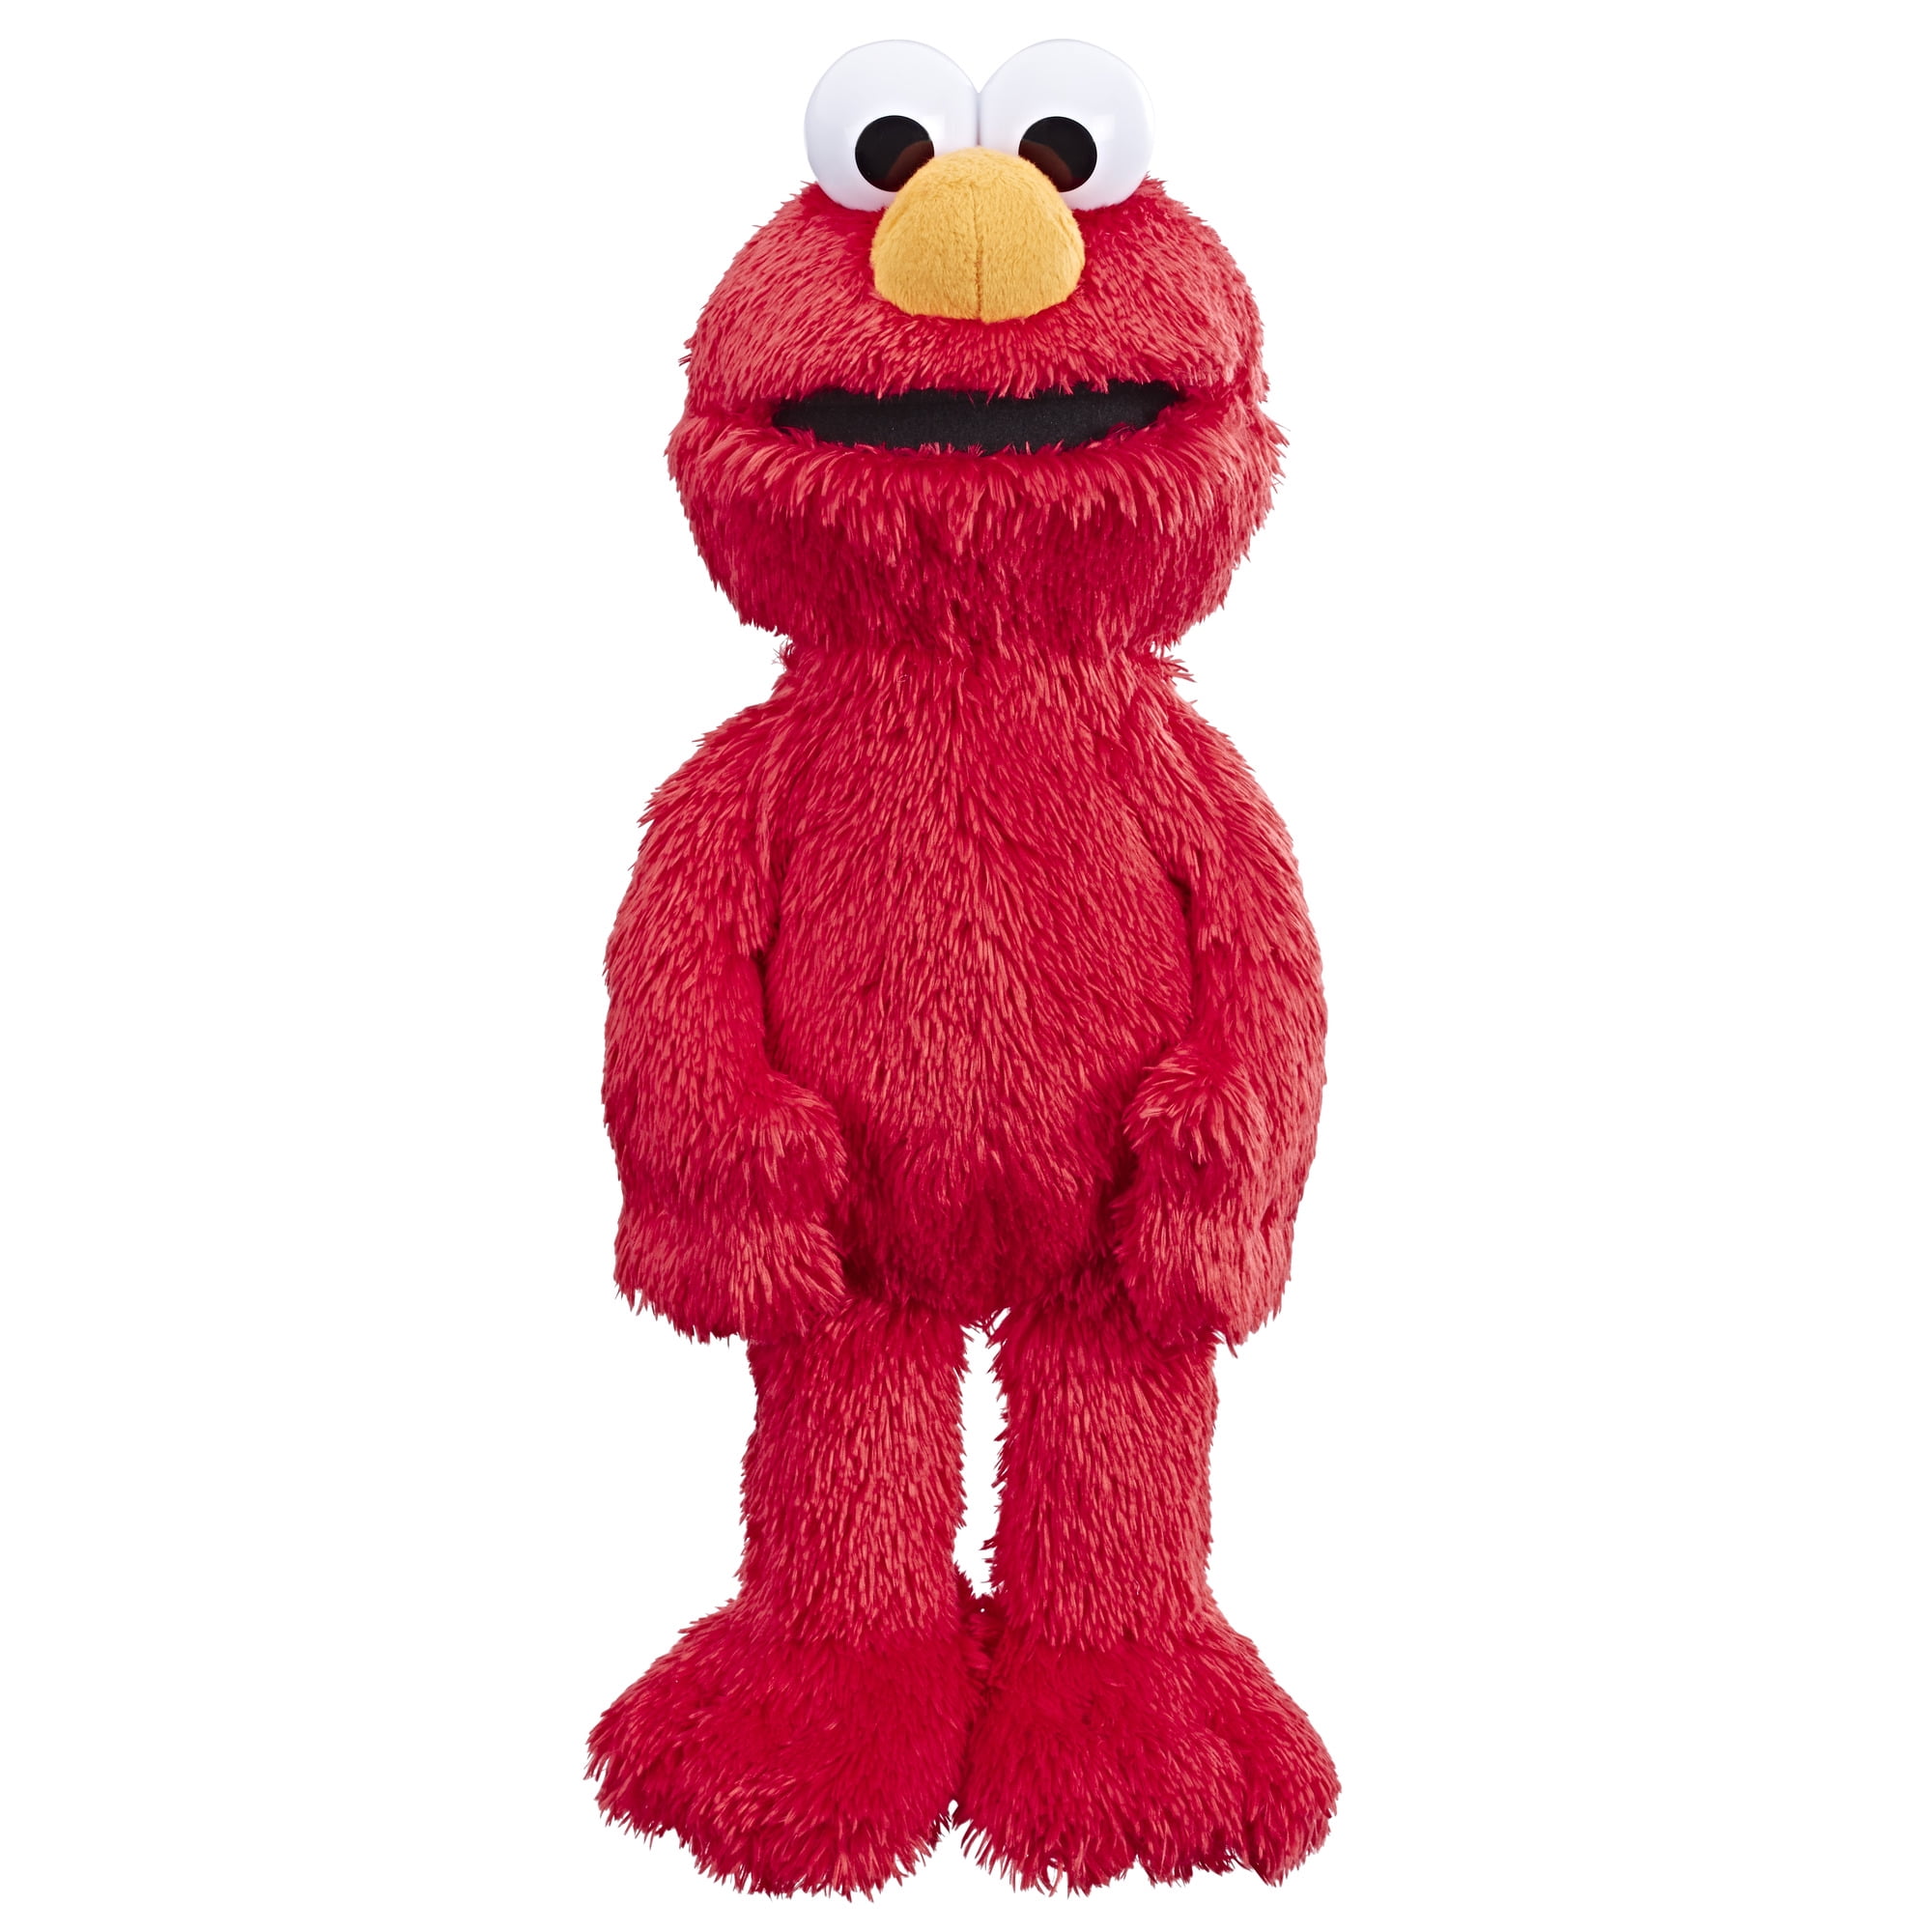 Sesame Street Elmo GROVER Plush Soft Doll Cuddle Stuffed Toy Teddy 14” 